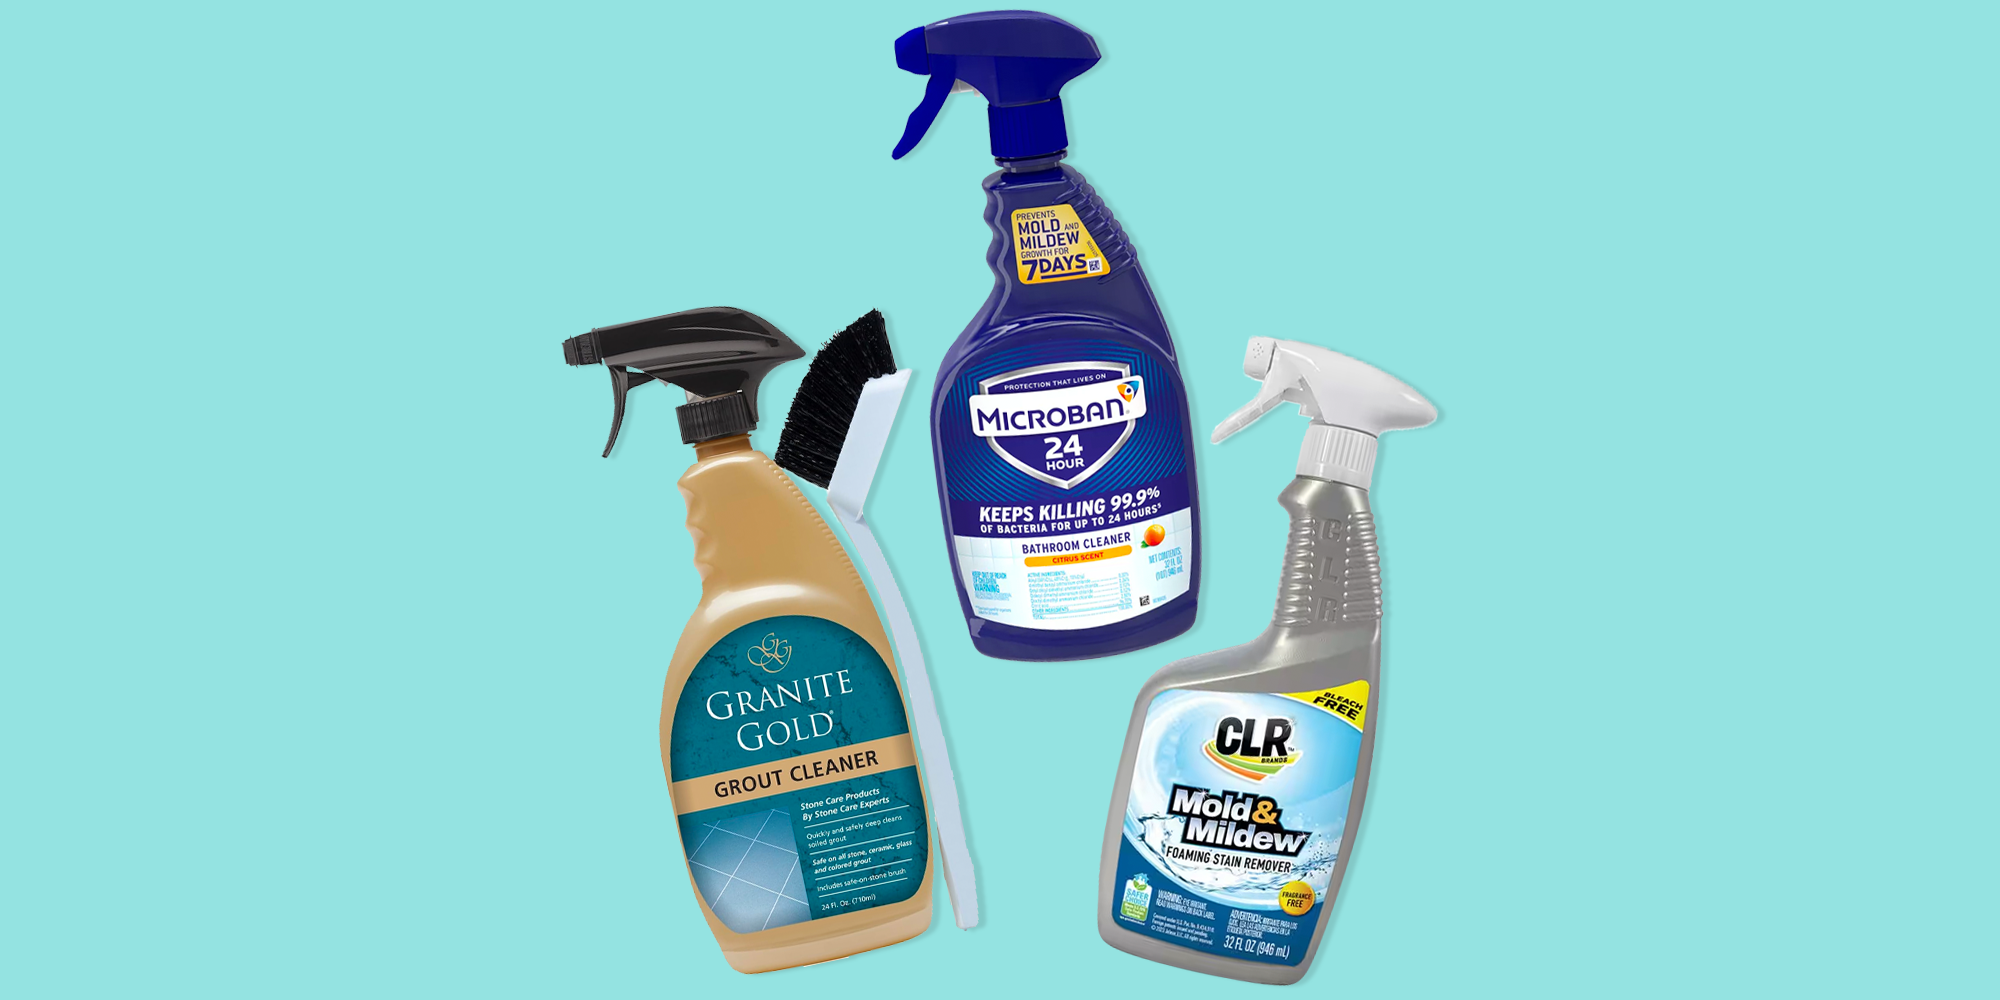 Tilex 946 soap Scum Remover & Disinfectant Spray (Lemon)